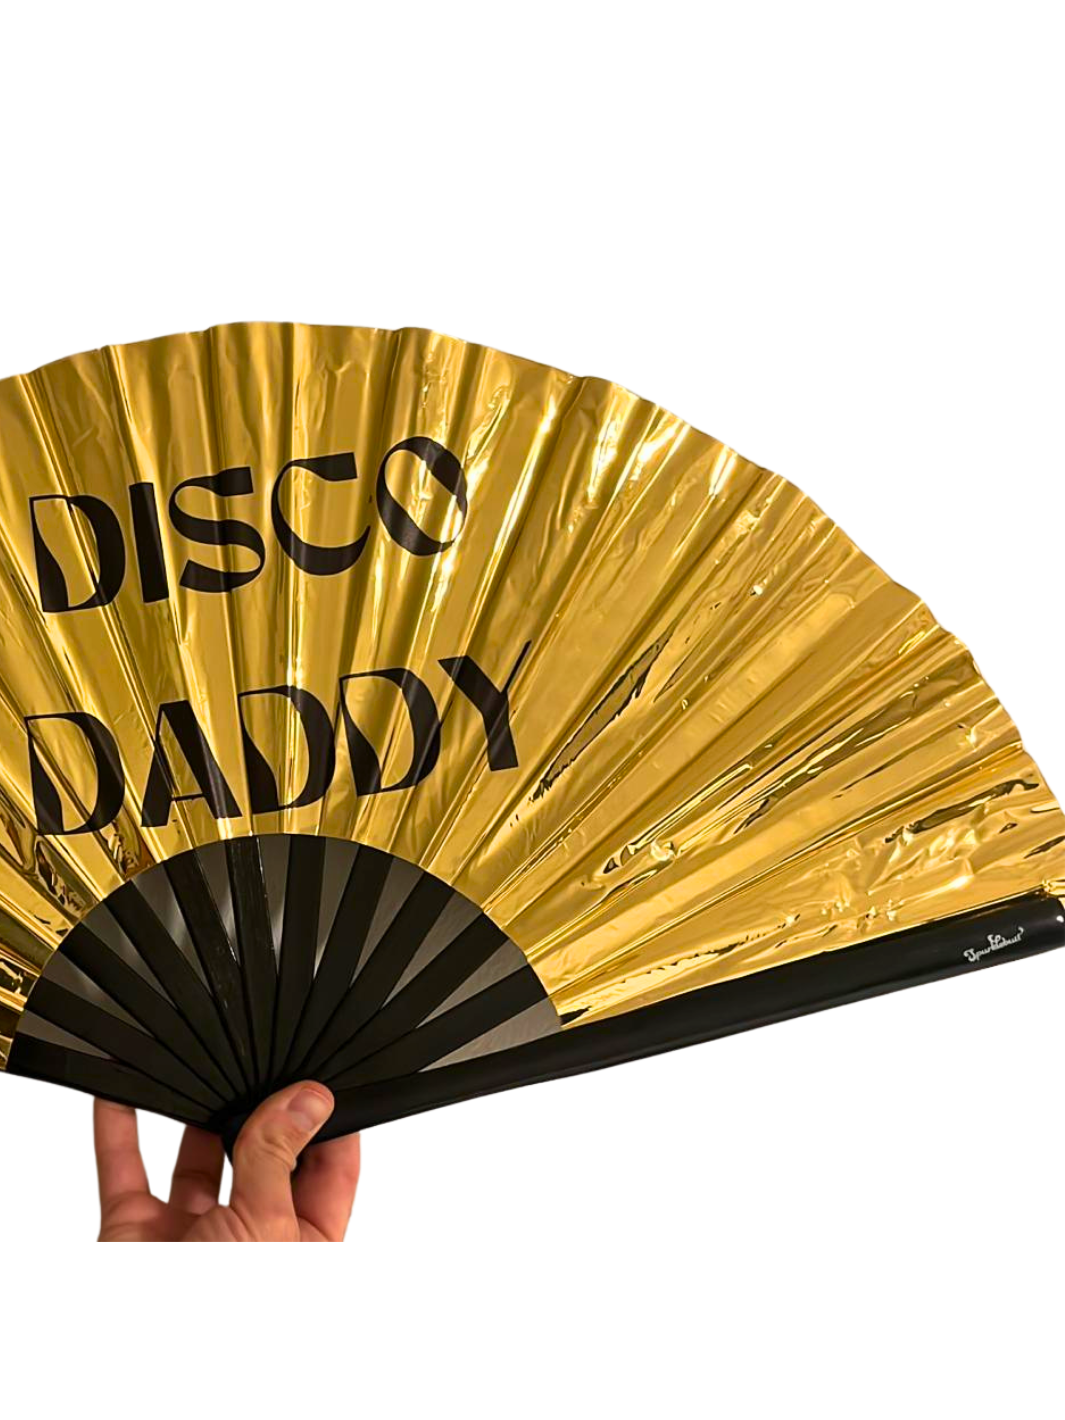 PARTY FAN - Disco Daddy